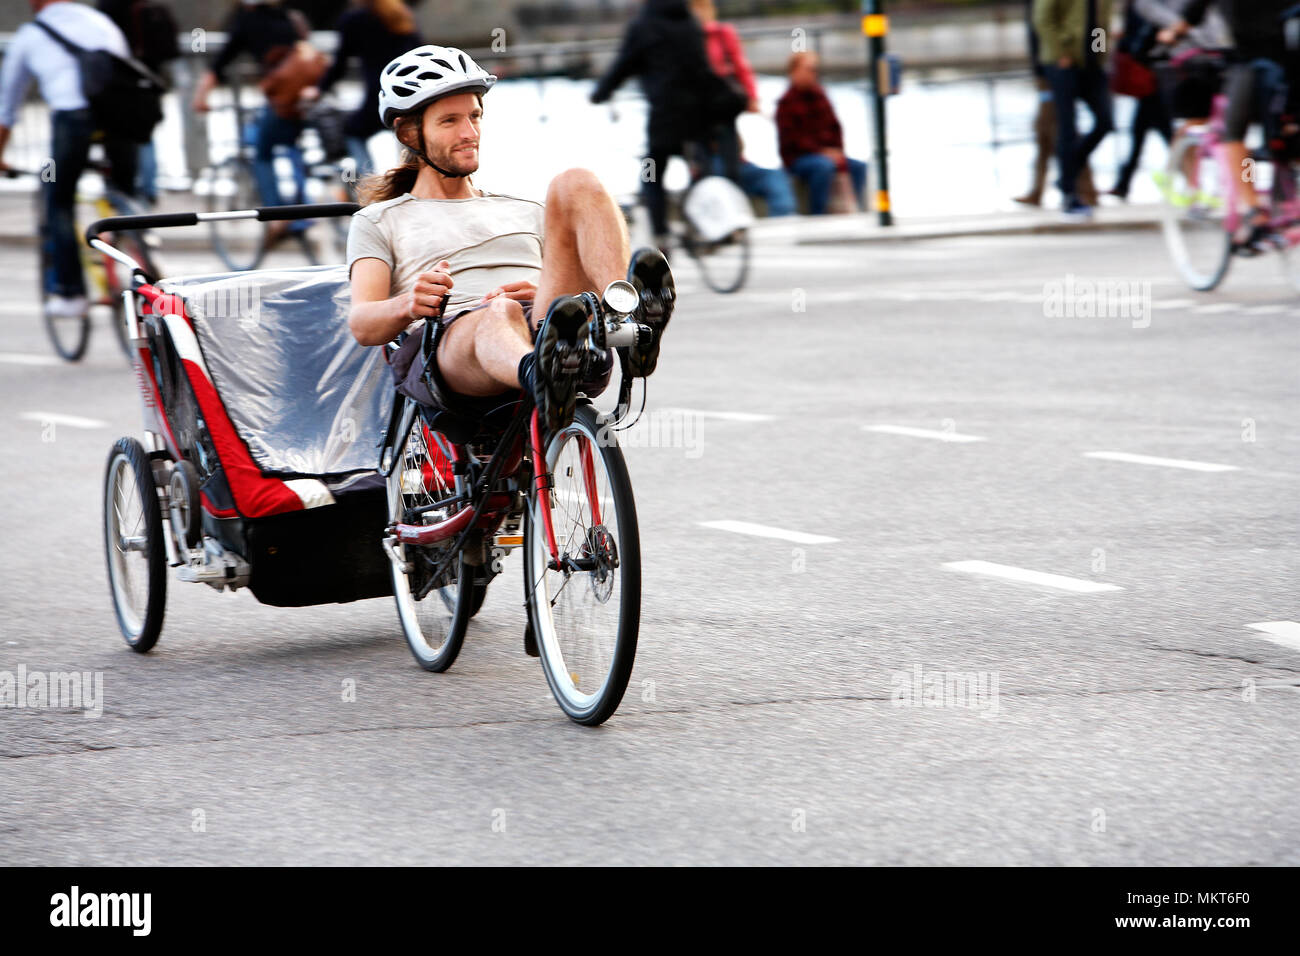 Eine Person Fahrrad liegend auf seinem liegerad mit Anhänger in Stockholm, Schweden. Stockfoto